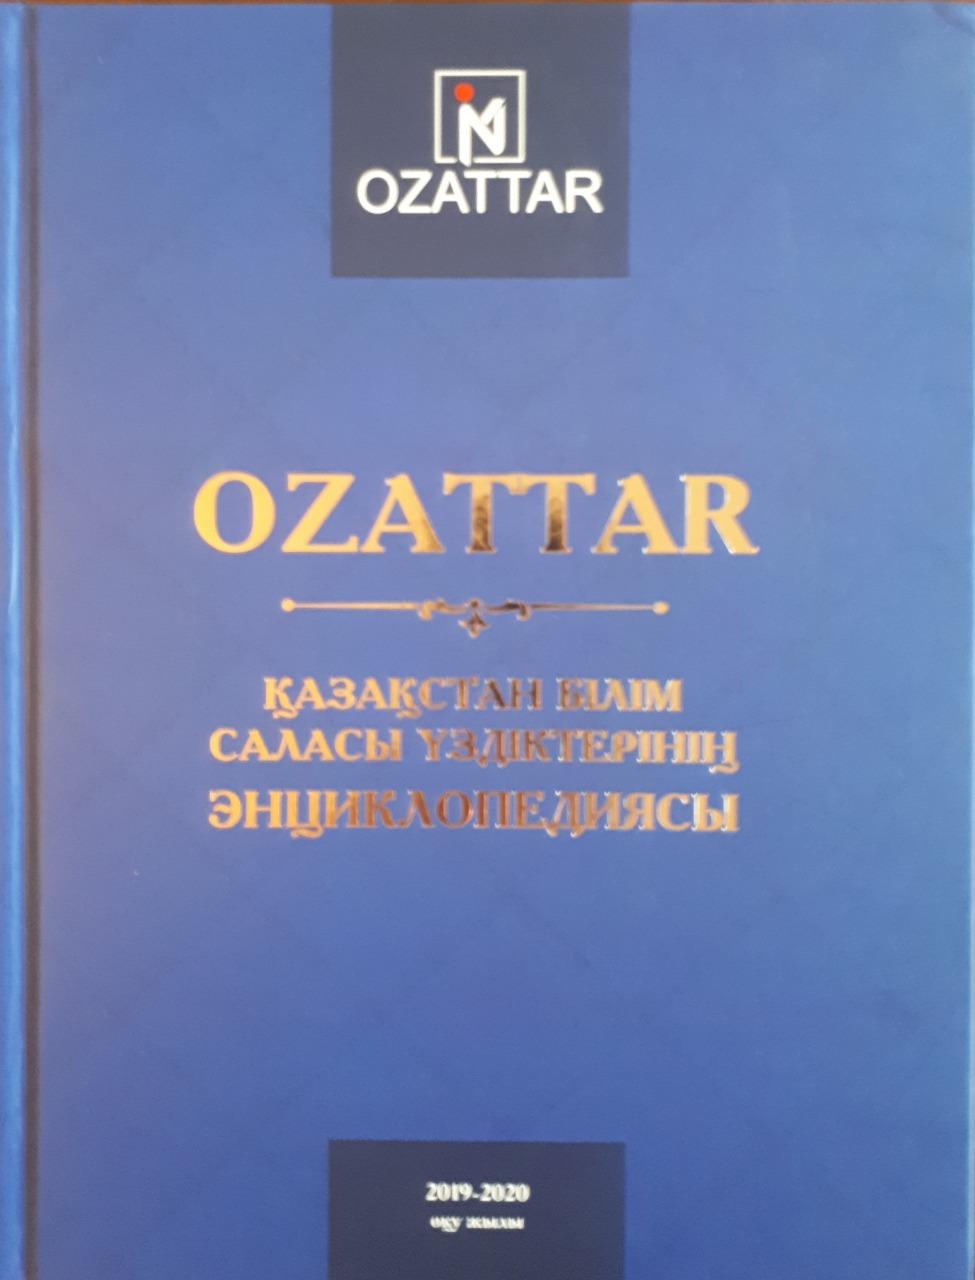 «отдела образования по городу Усть-каменогорску » КММ   2020 жылы Қазақстан білім саласы үздіктерінің  «OZATTAR» энциклопедиясына енгізілді.